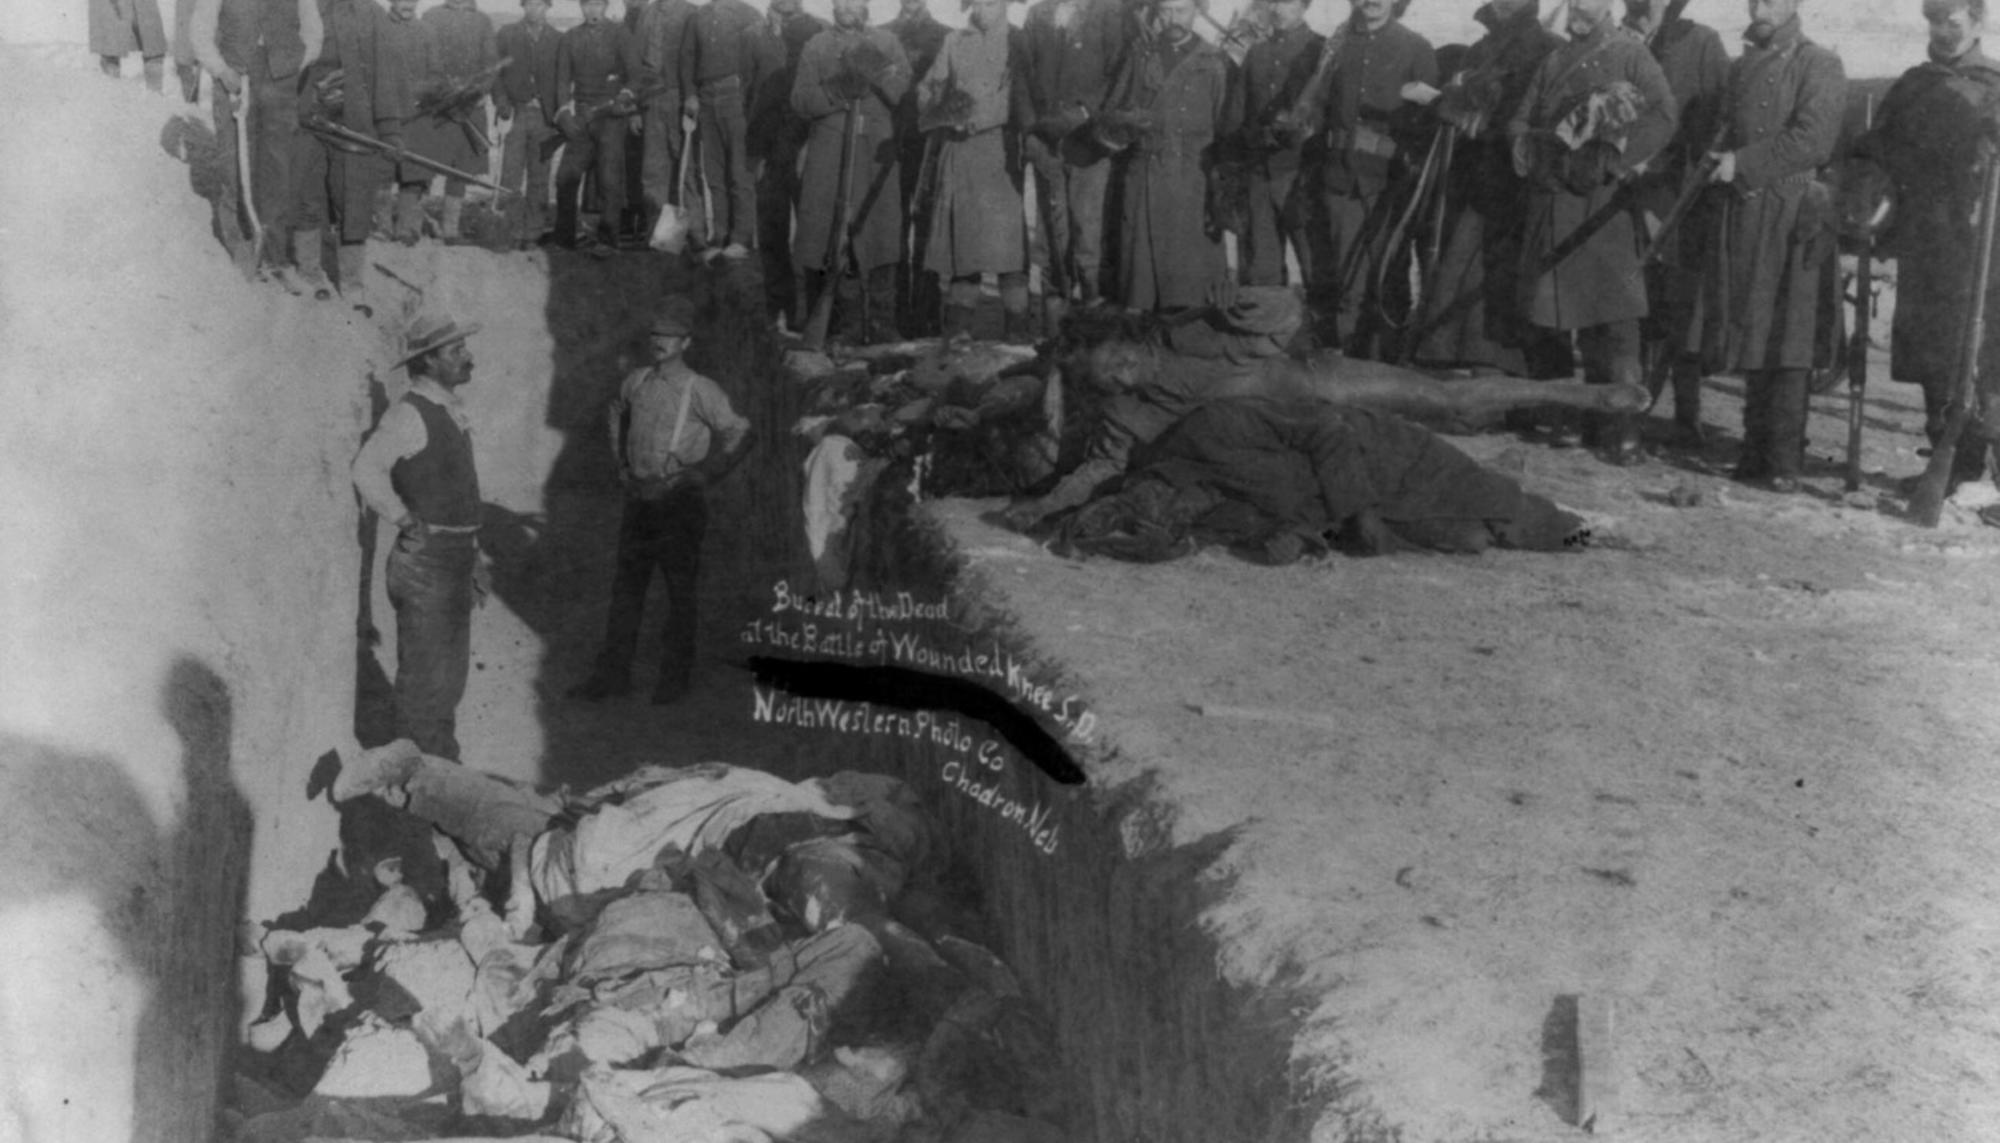 Matanza de Wounded Knee